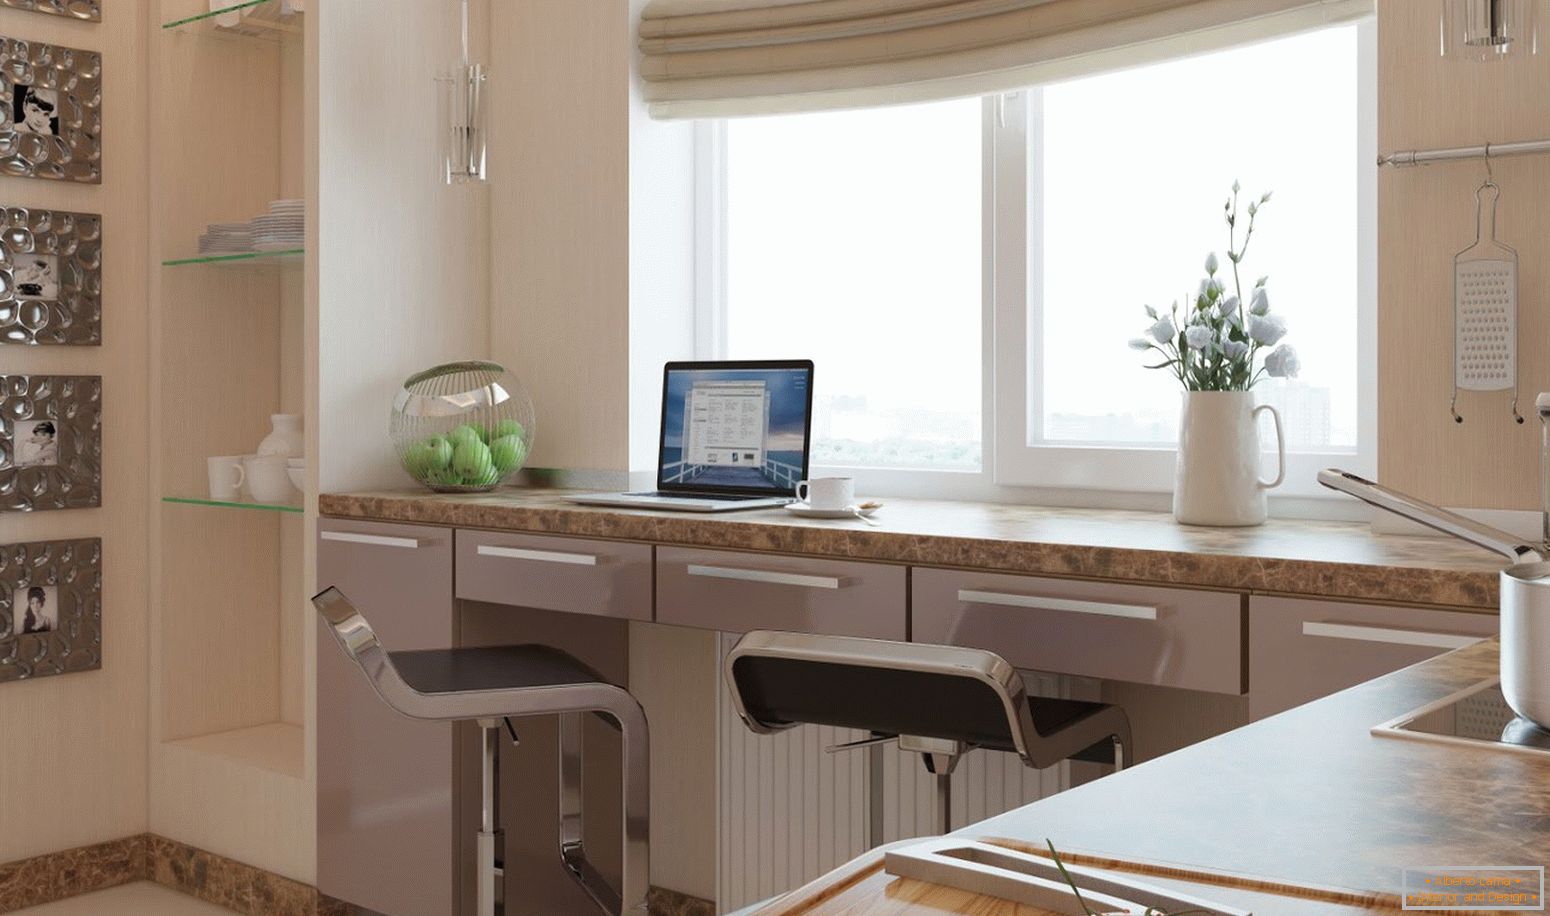 Área de trabalho na cozinha, combinada com um peitoril da janela